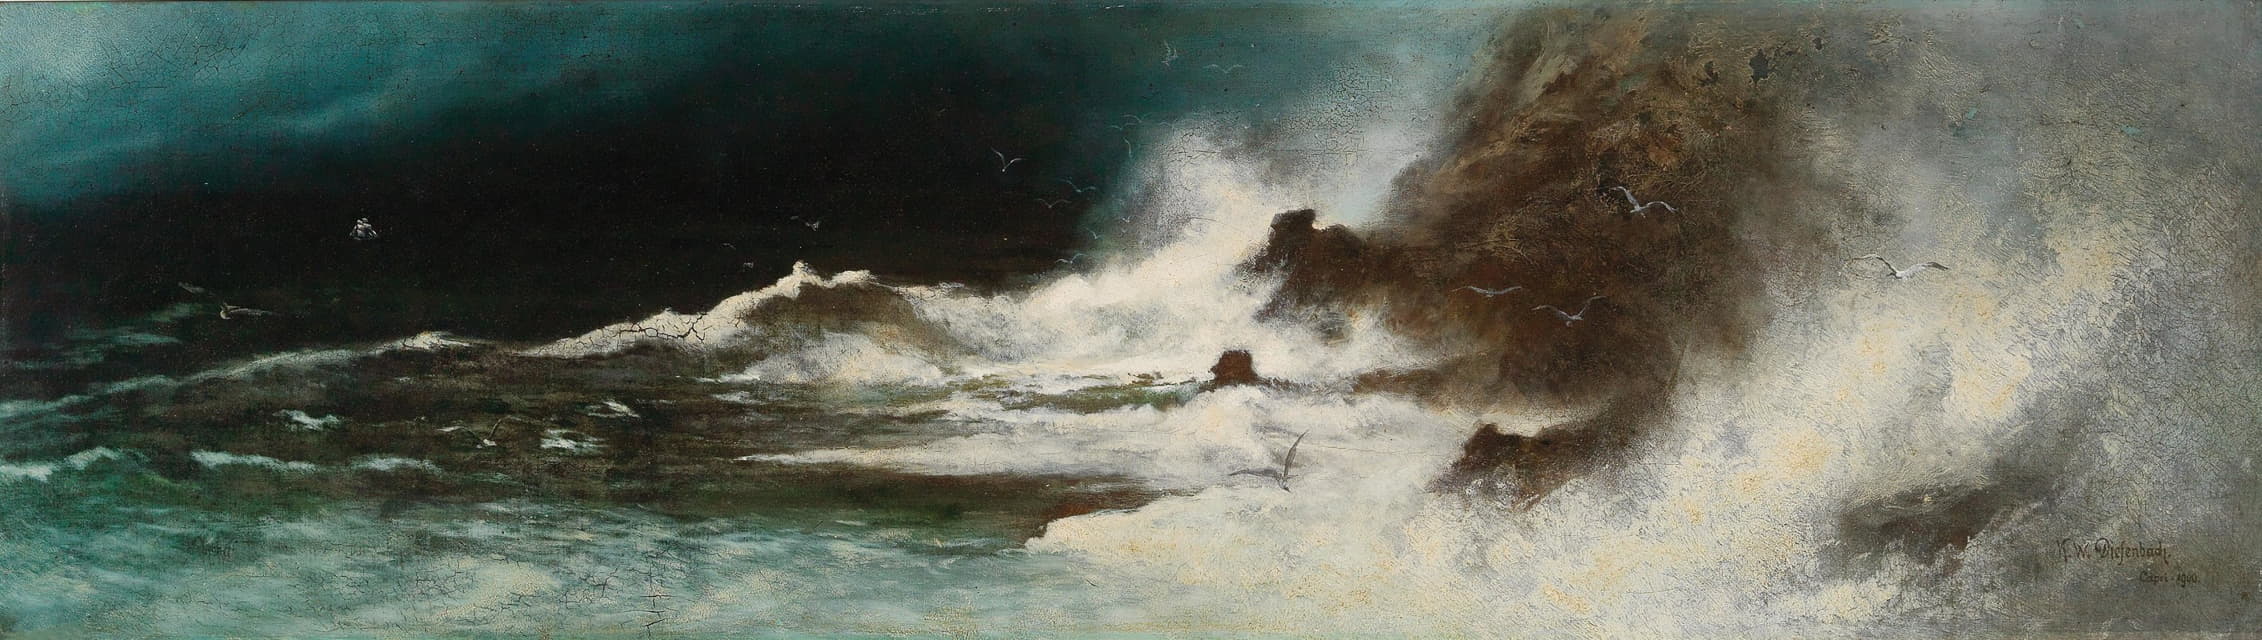 Karl Wilhelm Diefenbach - The storm, Capri